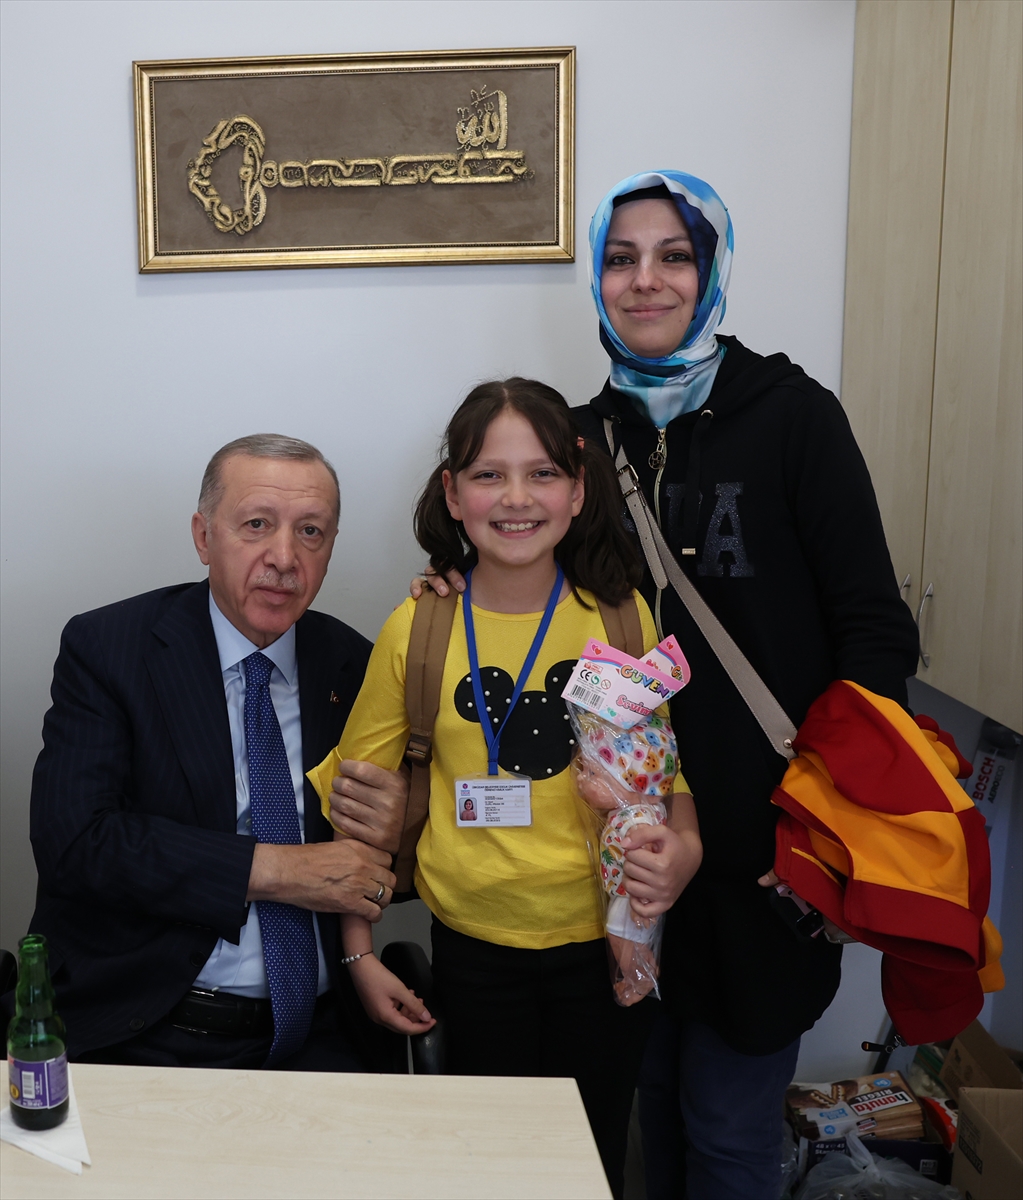 Cumhurbaşkanı Erdoğan, Üsküdar'da akaryakıt istasyonu çalışanlarını ziyaret etti